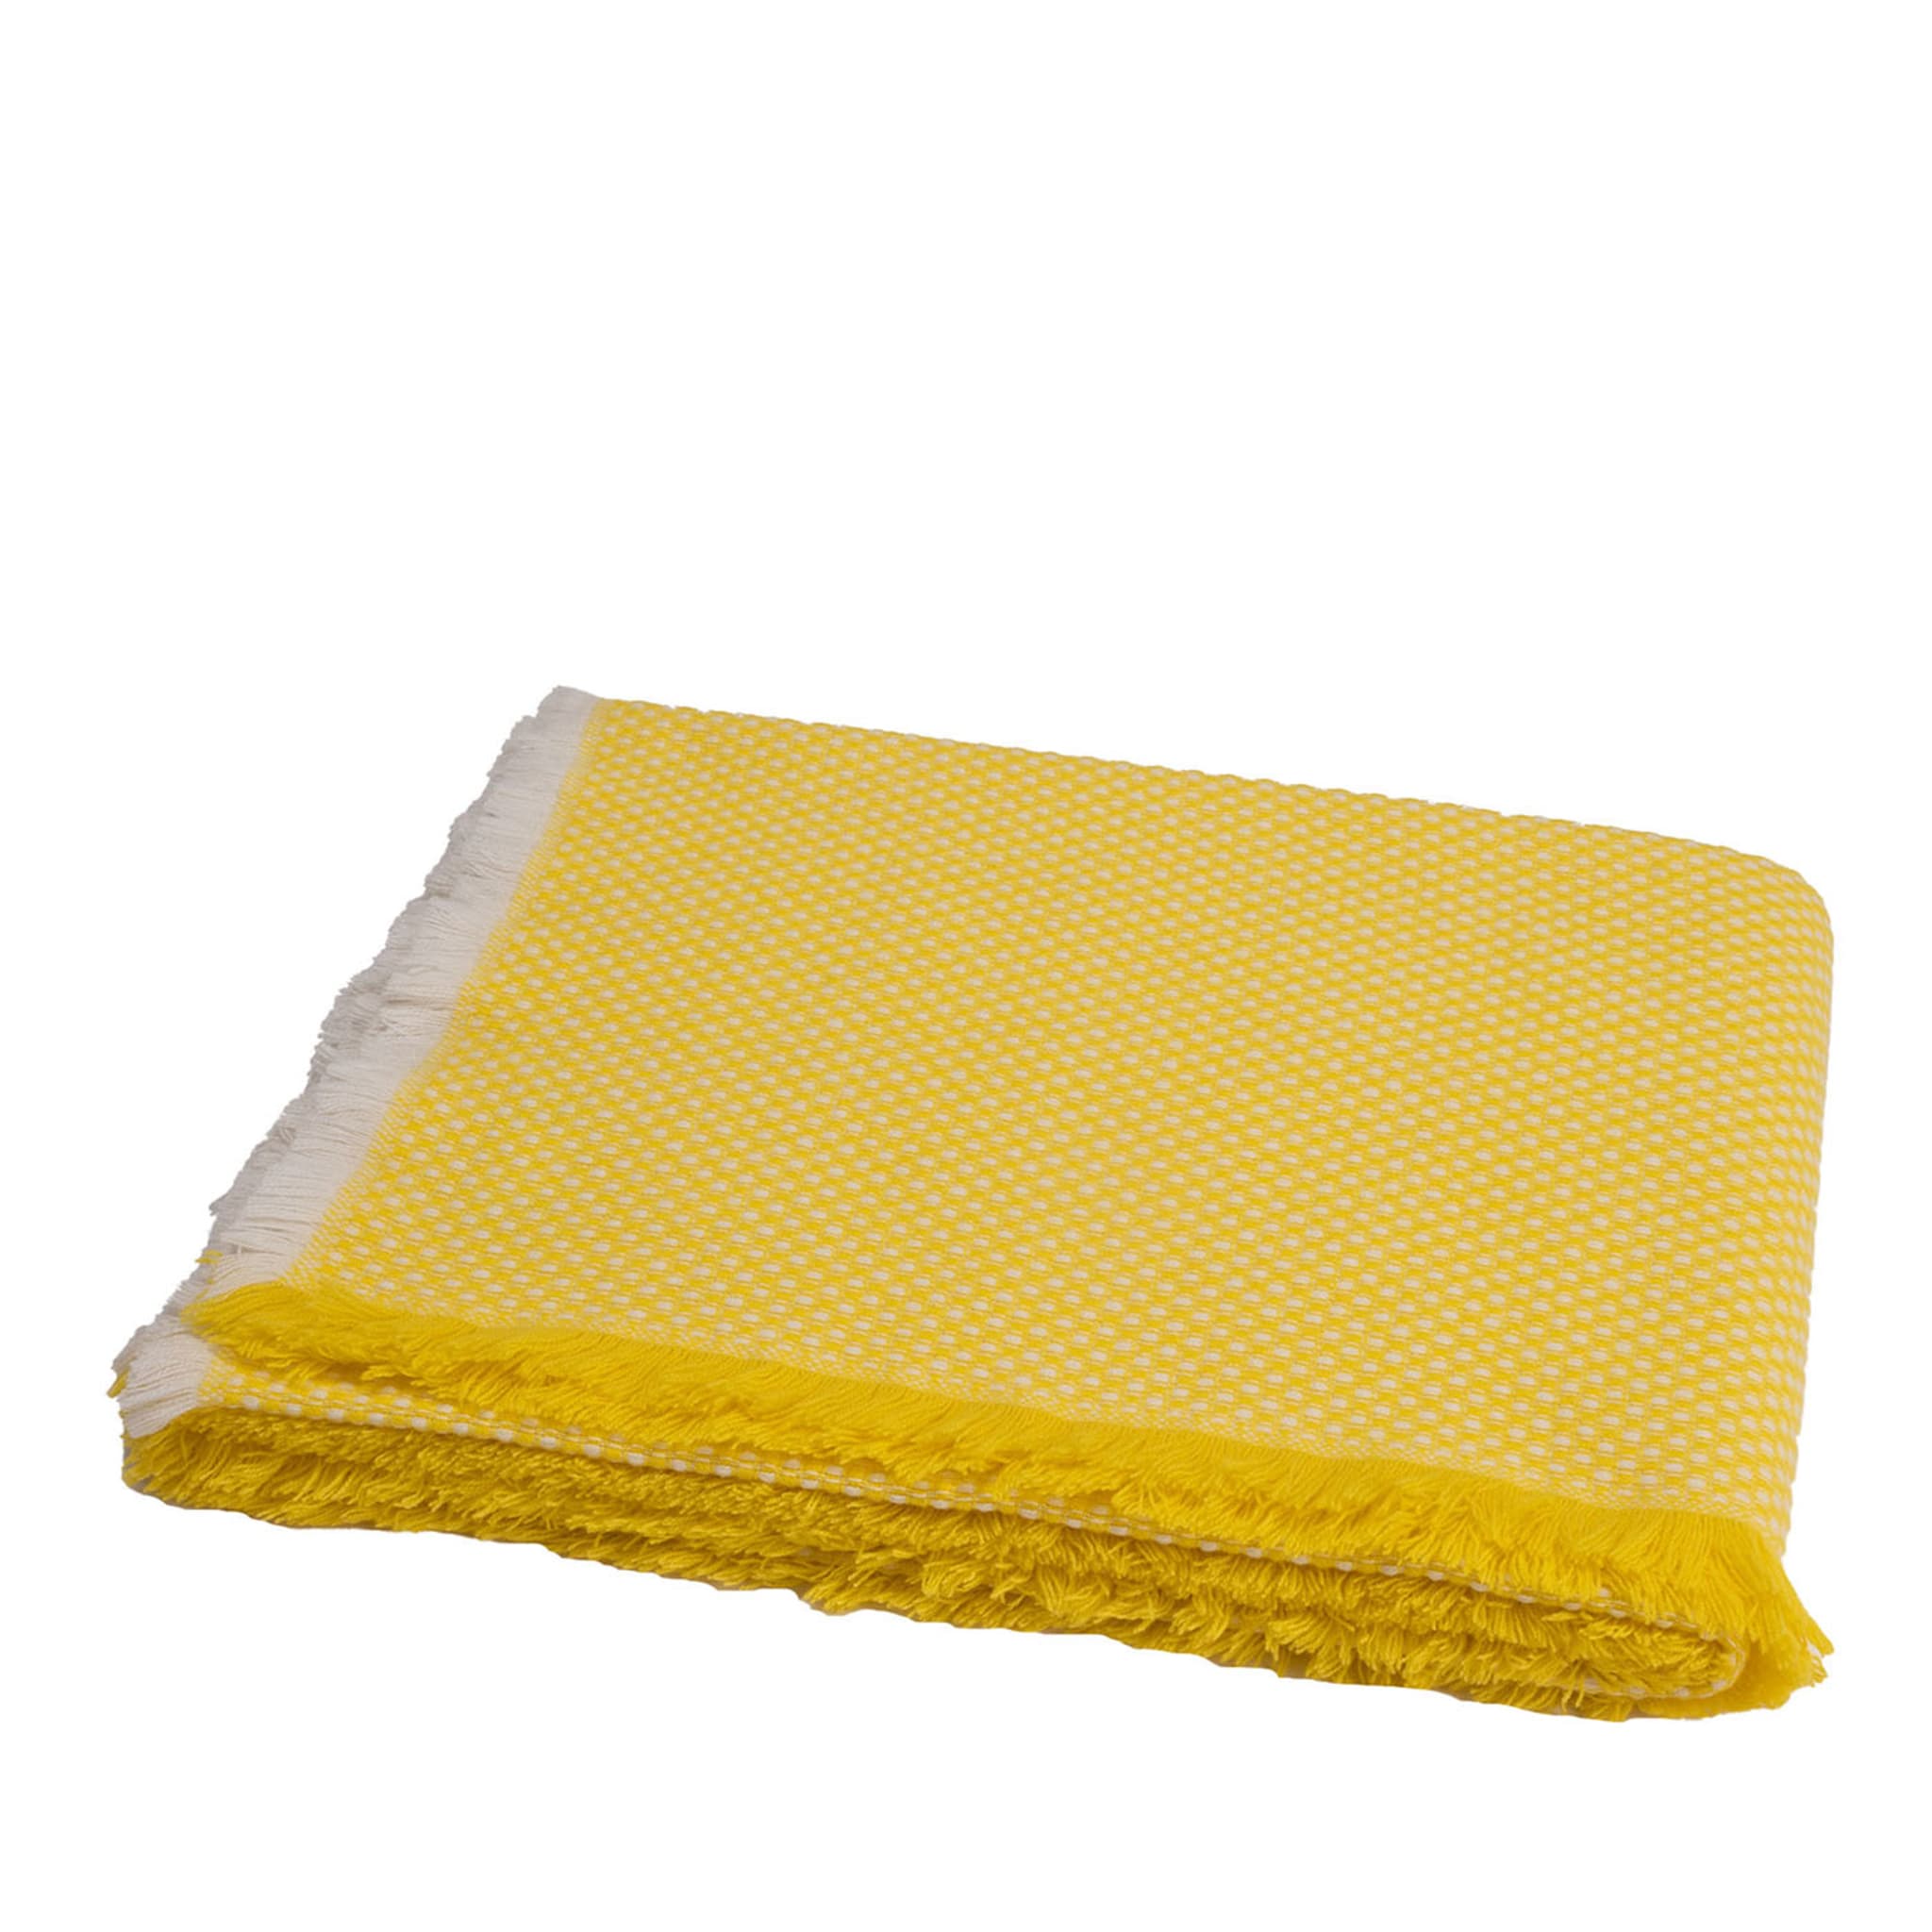 Vida Yellow Blanket - Main view